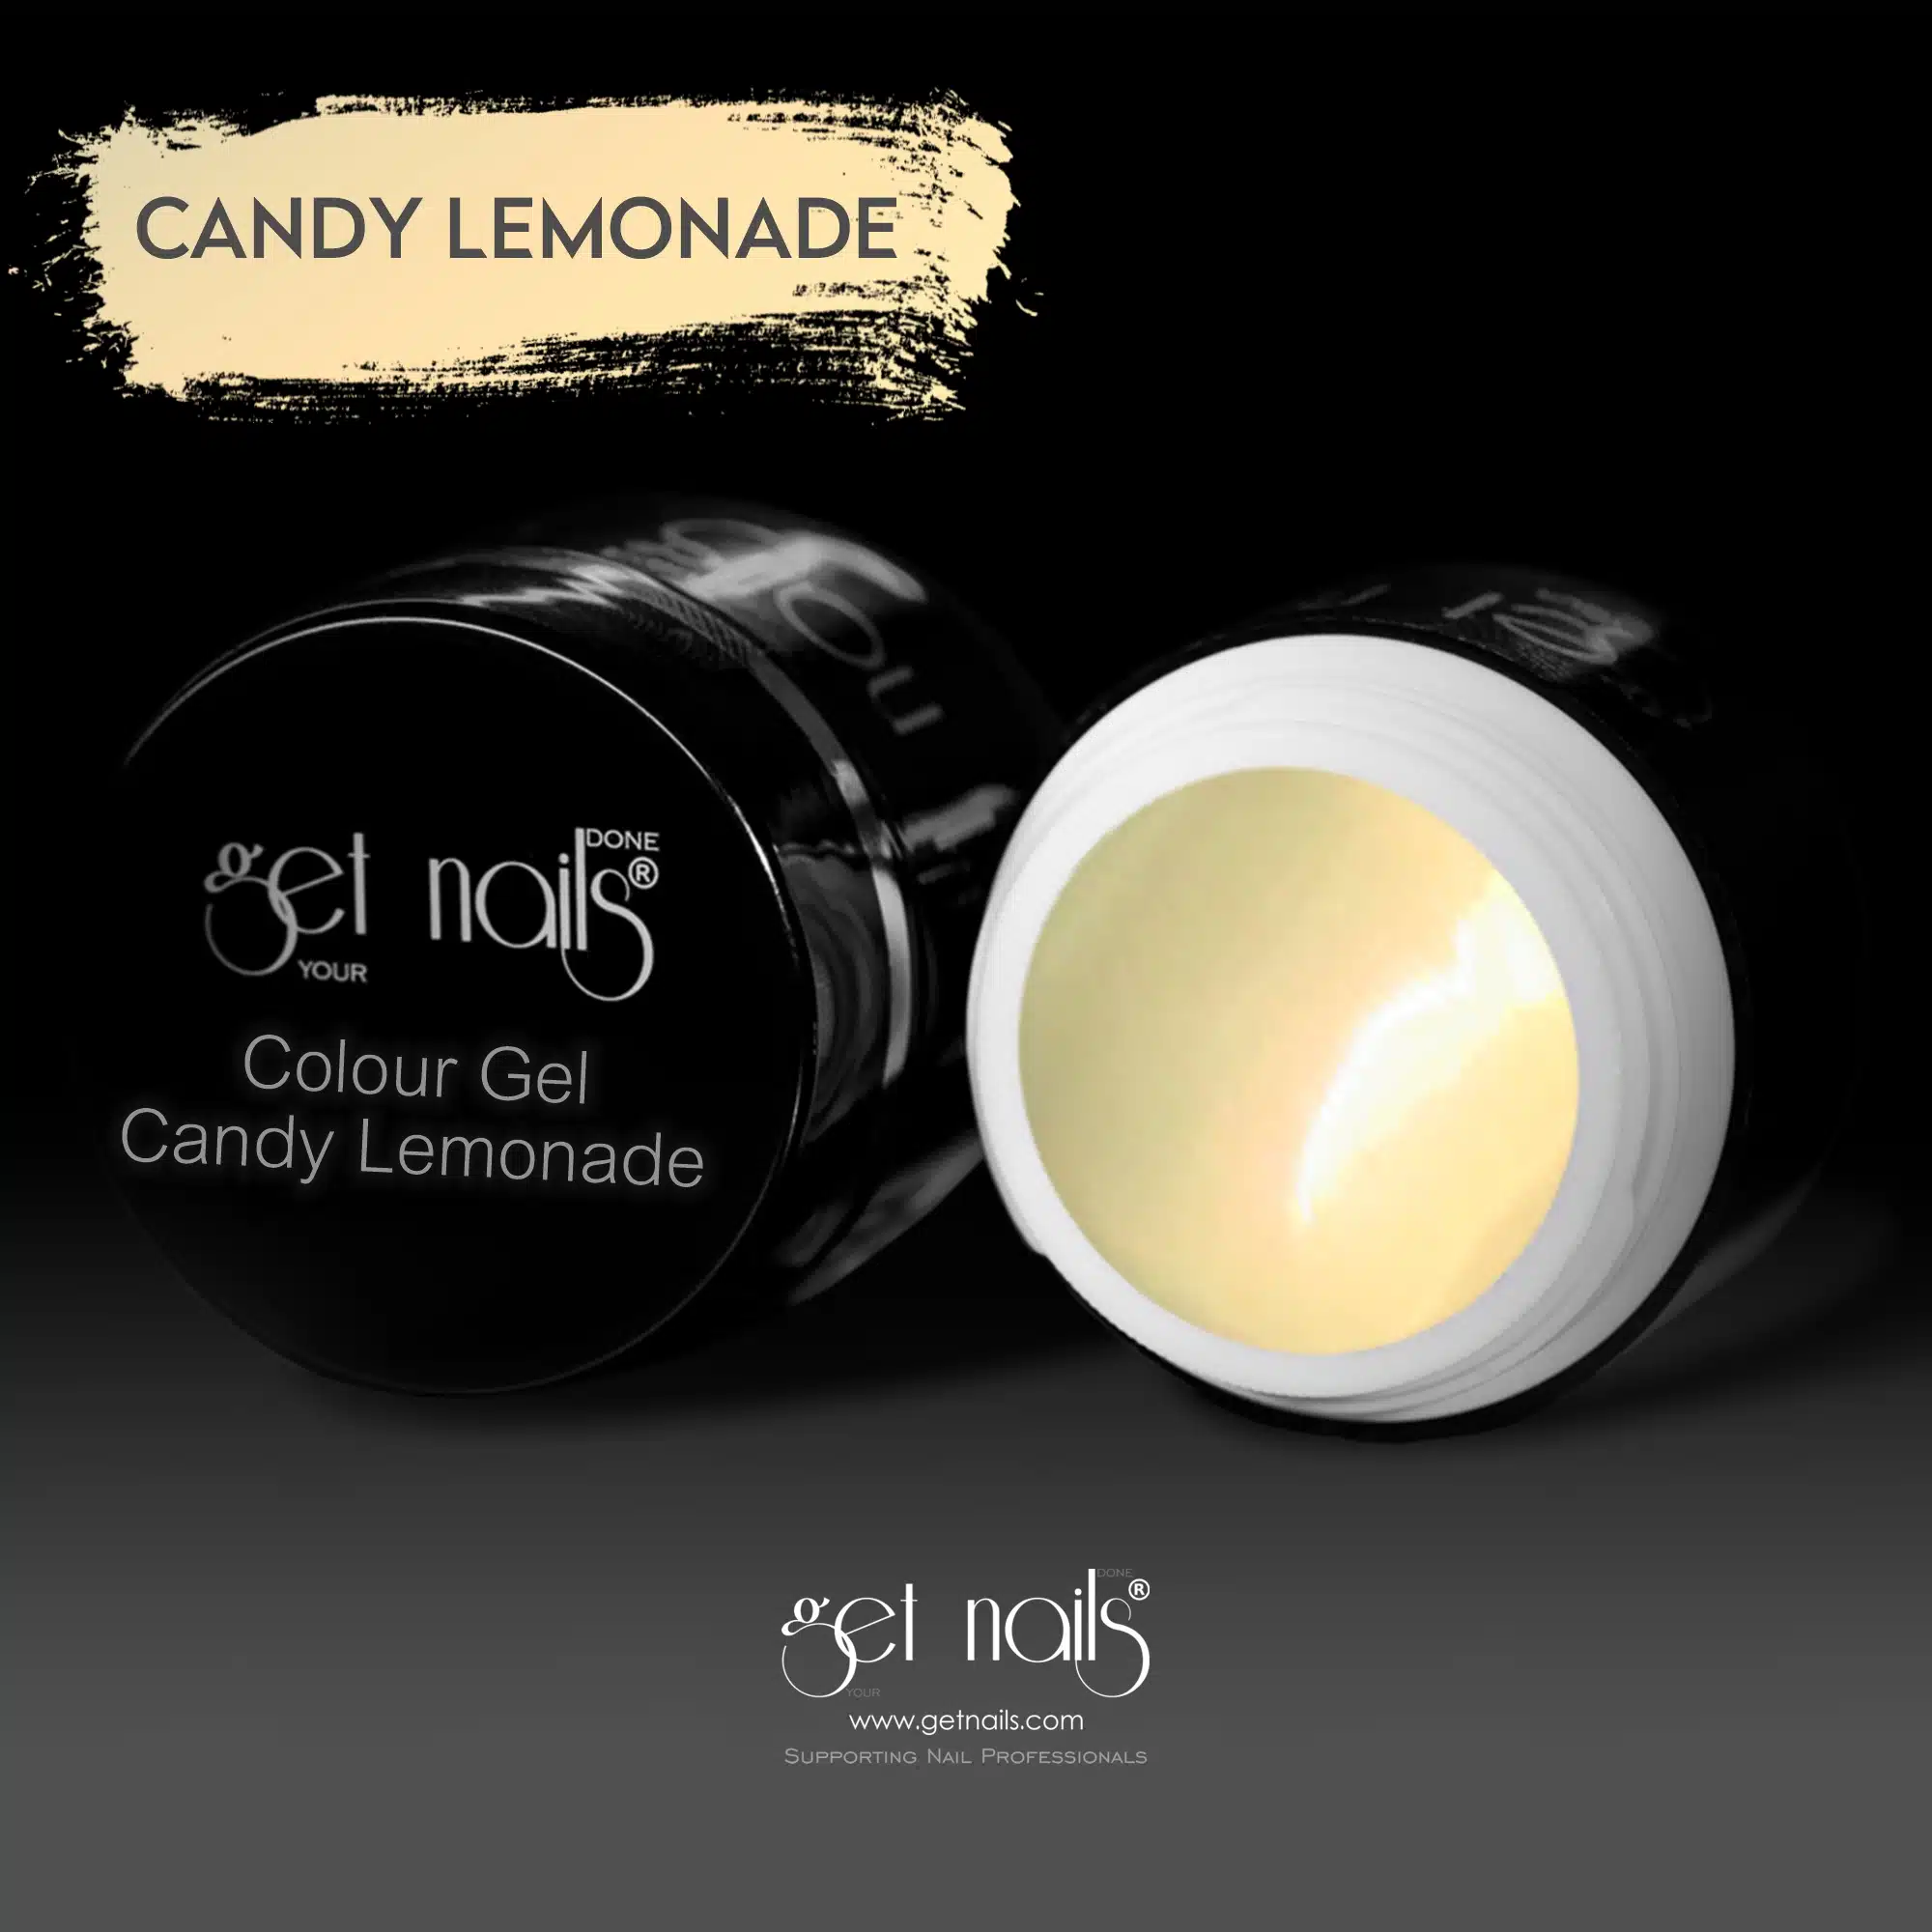 Get Nails Austria - Colour Gel Candy Lemonade 5g